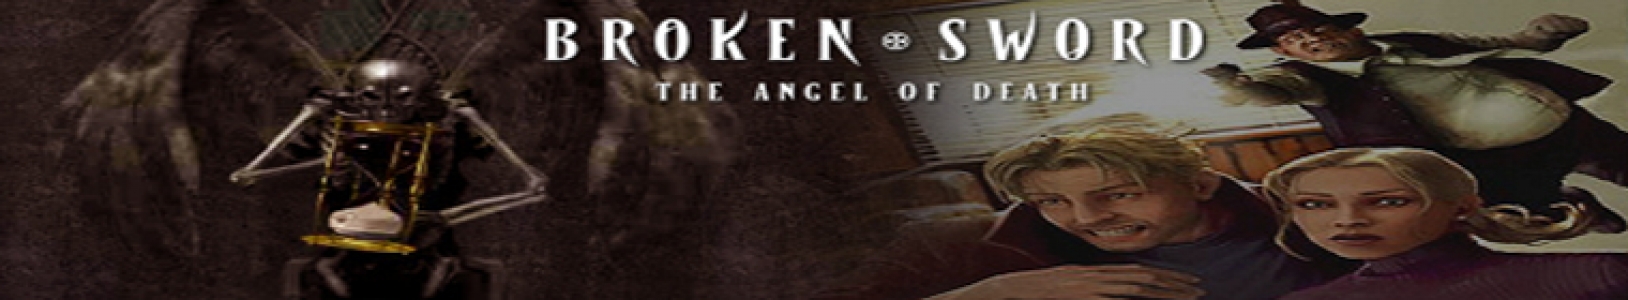 Broken Sword 4: The Angel of Death banner